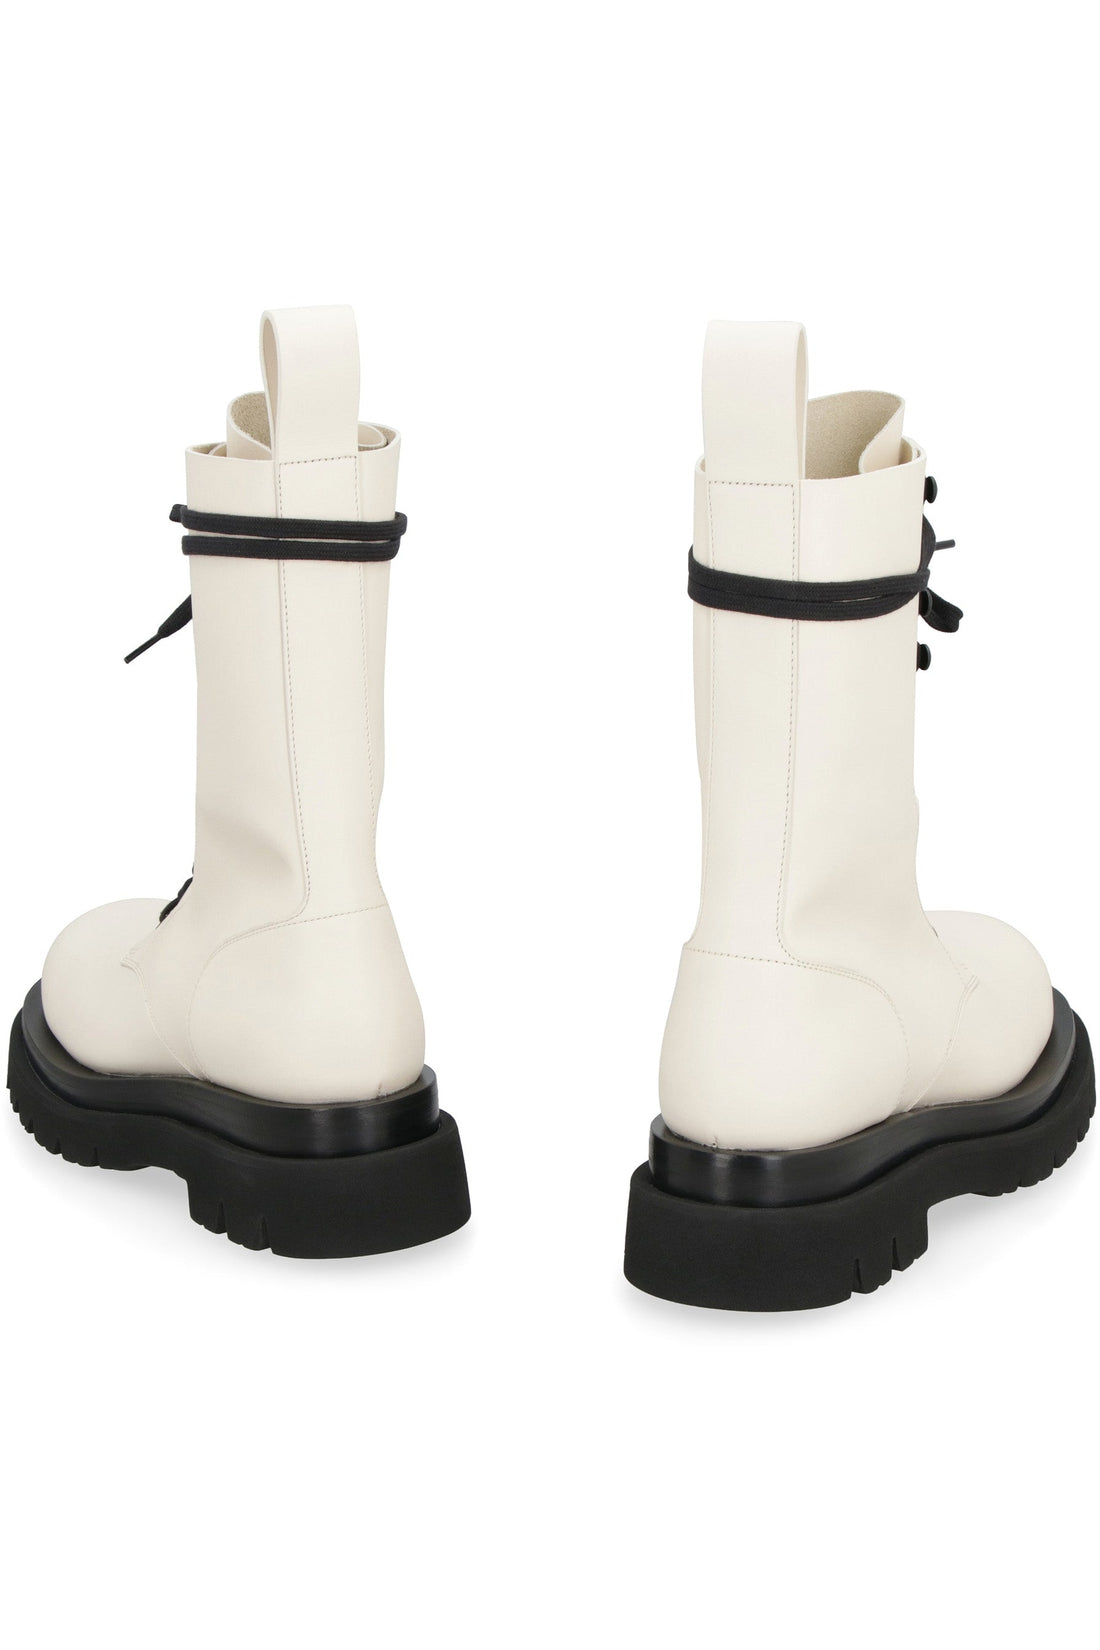 Bottega Veneta-OUTLET-SALE-Lug lace-up ankle boots-ARCHIVIST